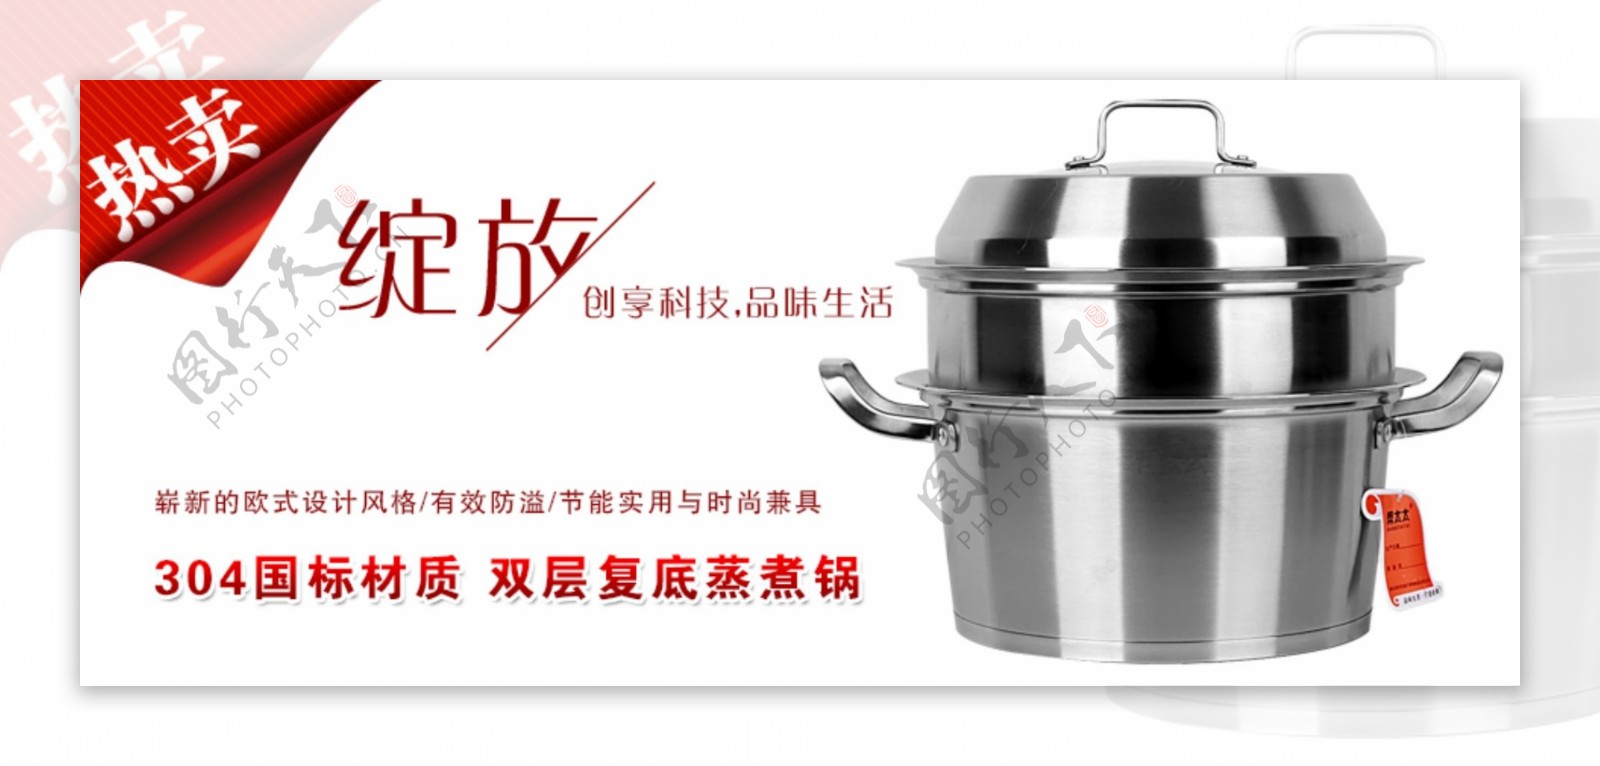 淘宝蒸煮锅促销海报设计PSD素材